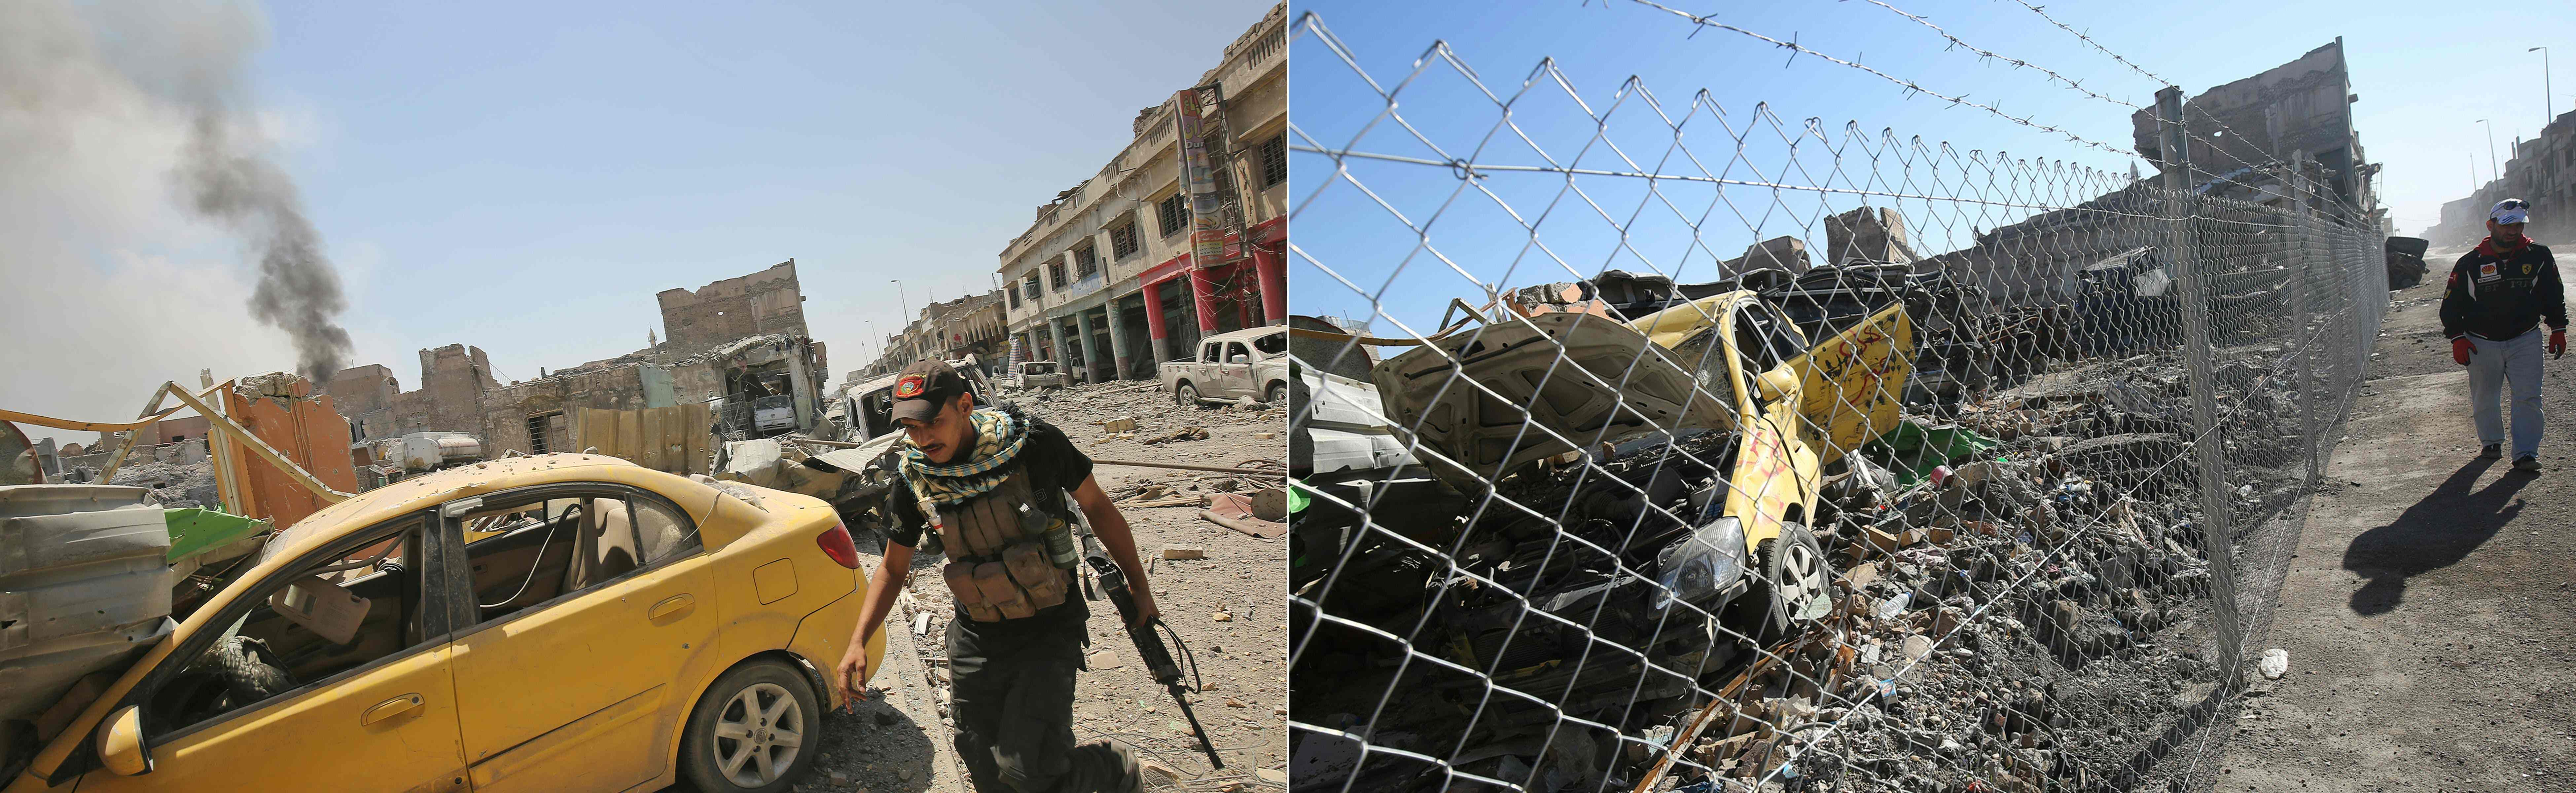 حطام ودمار فى الموصل بسبب داعش